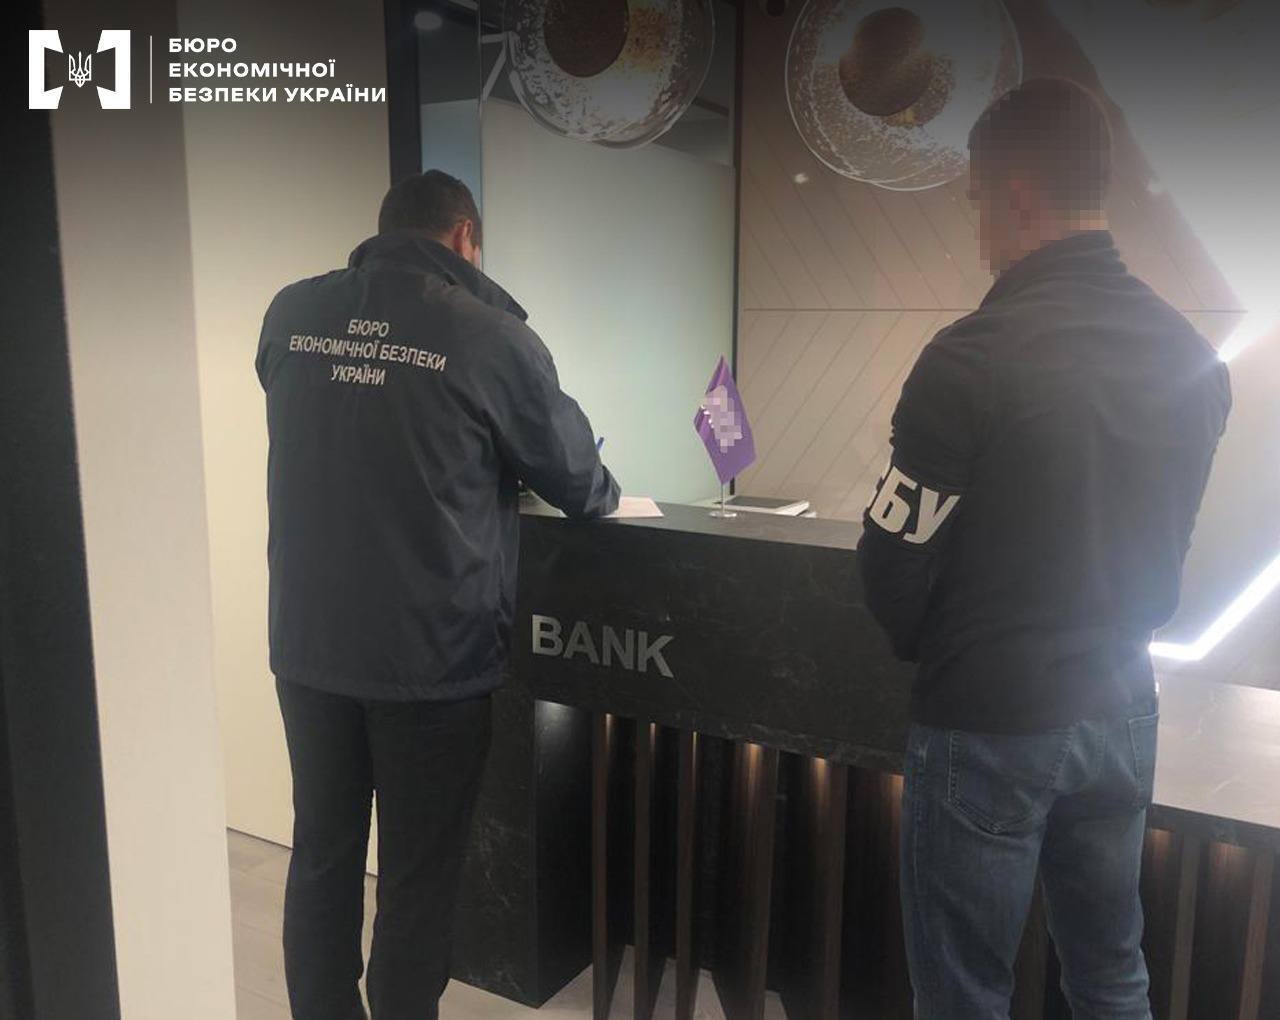 Відомий український банк ховав від податкової гроші для грального бізнесу: в БЕБ розкрили деталі